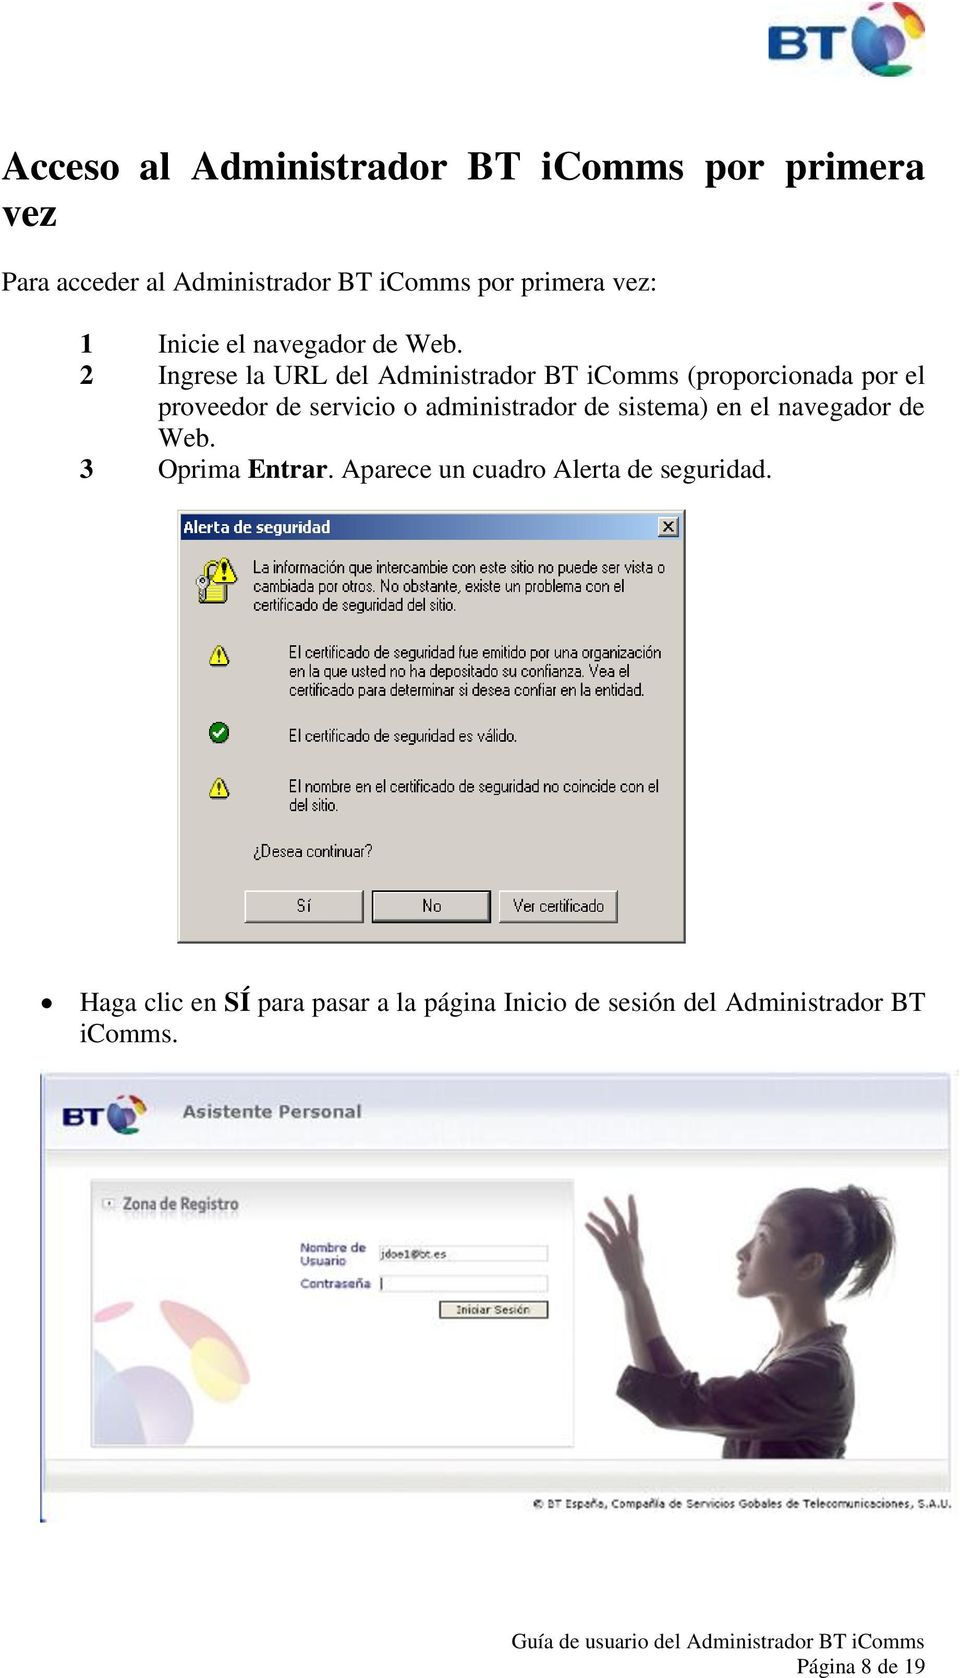 2 Ingrese la URL del Administrador BT icomms (proporcionada por el proveedor de servicio o administrador de